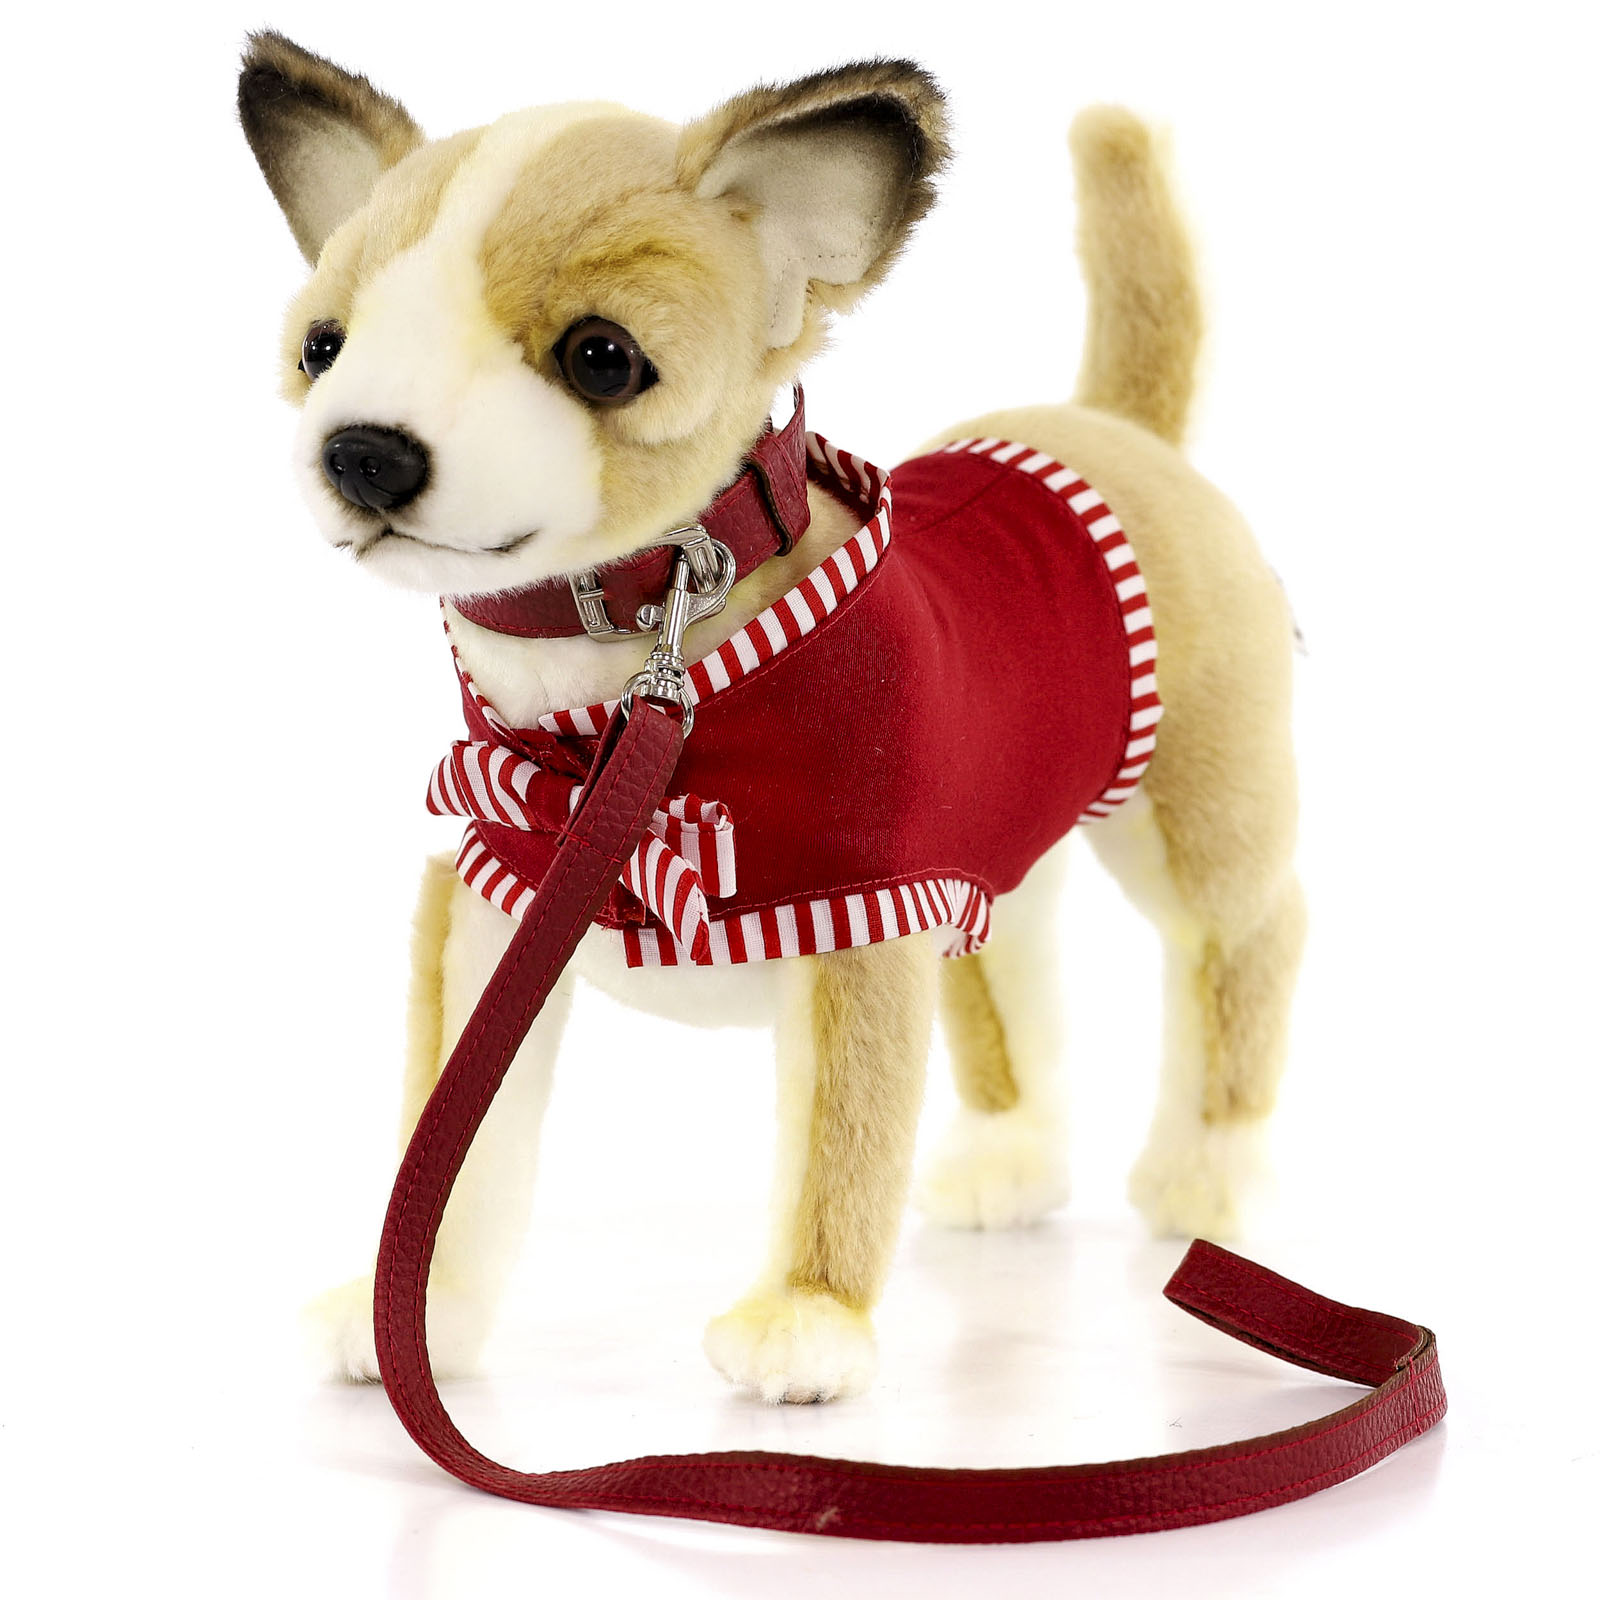 Реалистичная мягкая игрушка Hansa Creation Собака чихуахуа, в красной майке, 27 см реалистичная мягкая игрушка hansa creation собака йоркширский терьер 38 см